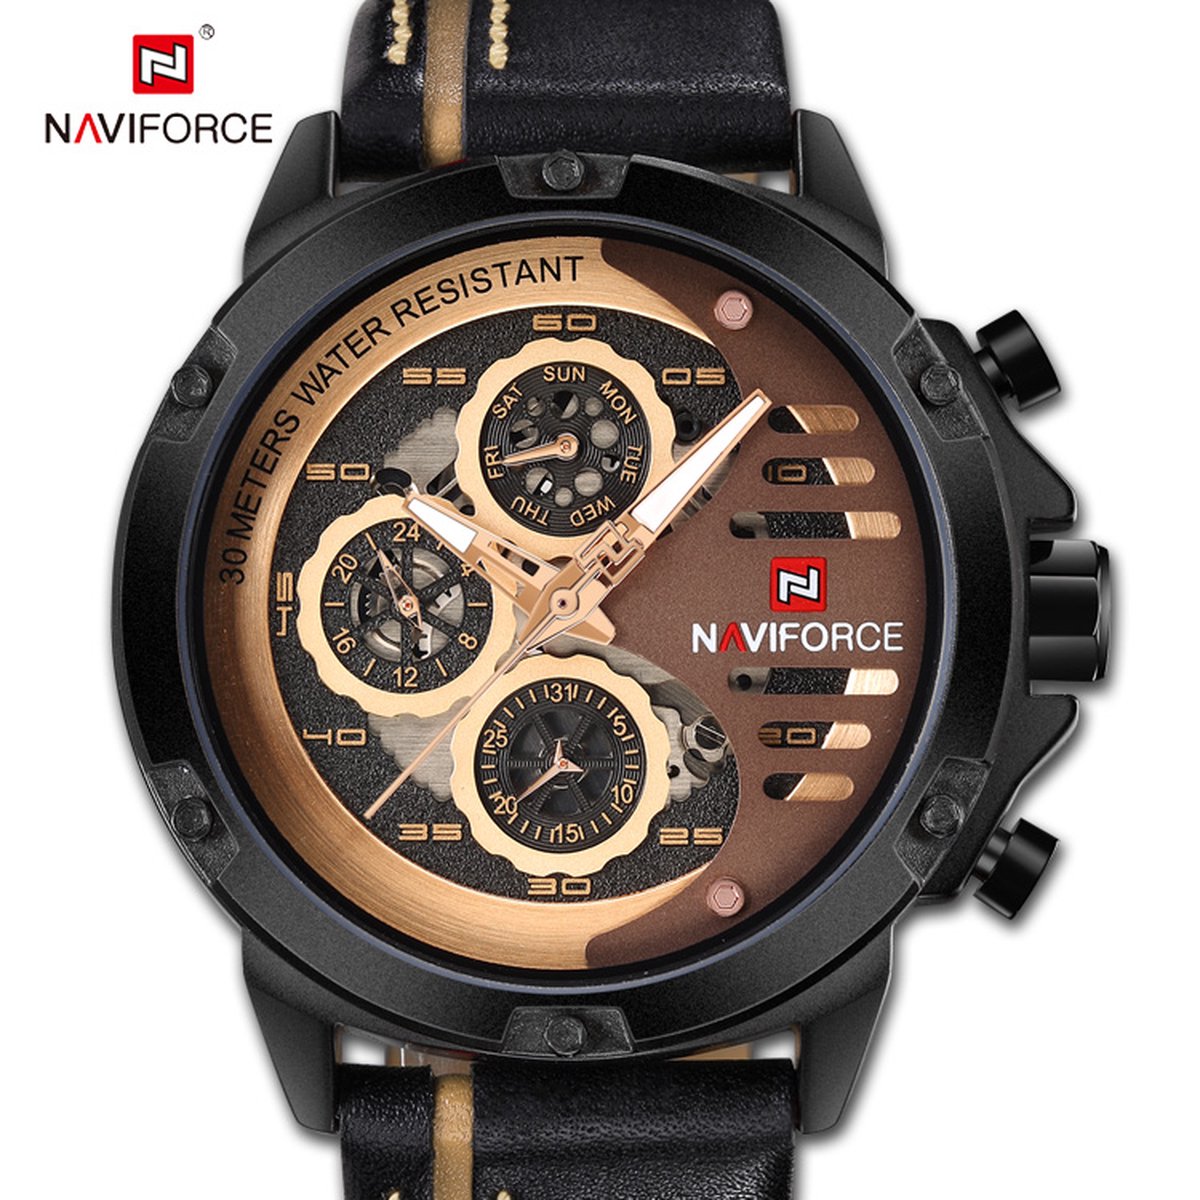 NAVIFORCE horloge voor mannen, met zwarte lederen polsband, zwarte horlogekast en grijze + gouden wijzerplaat met in het donker oplichtende wijzers ( model 9110 BRGBN ), verpakt in een mooie geschenkdoos